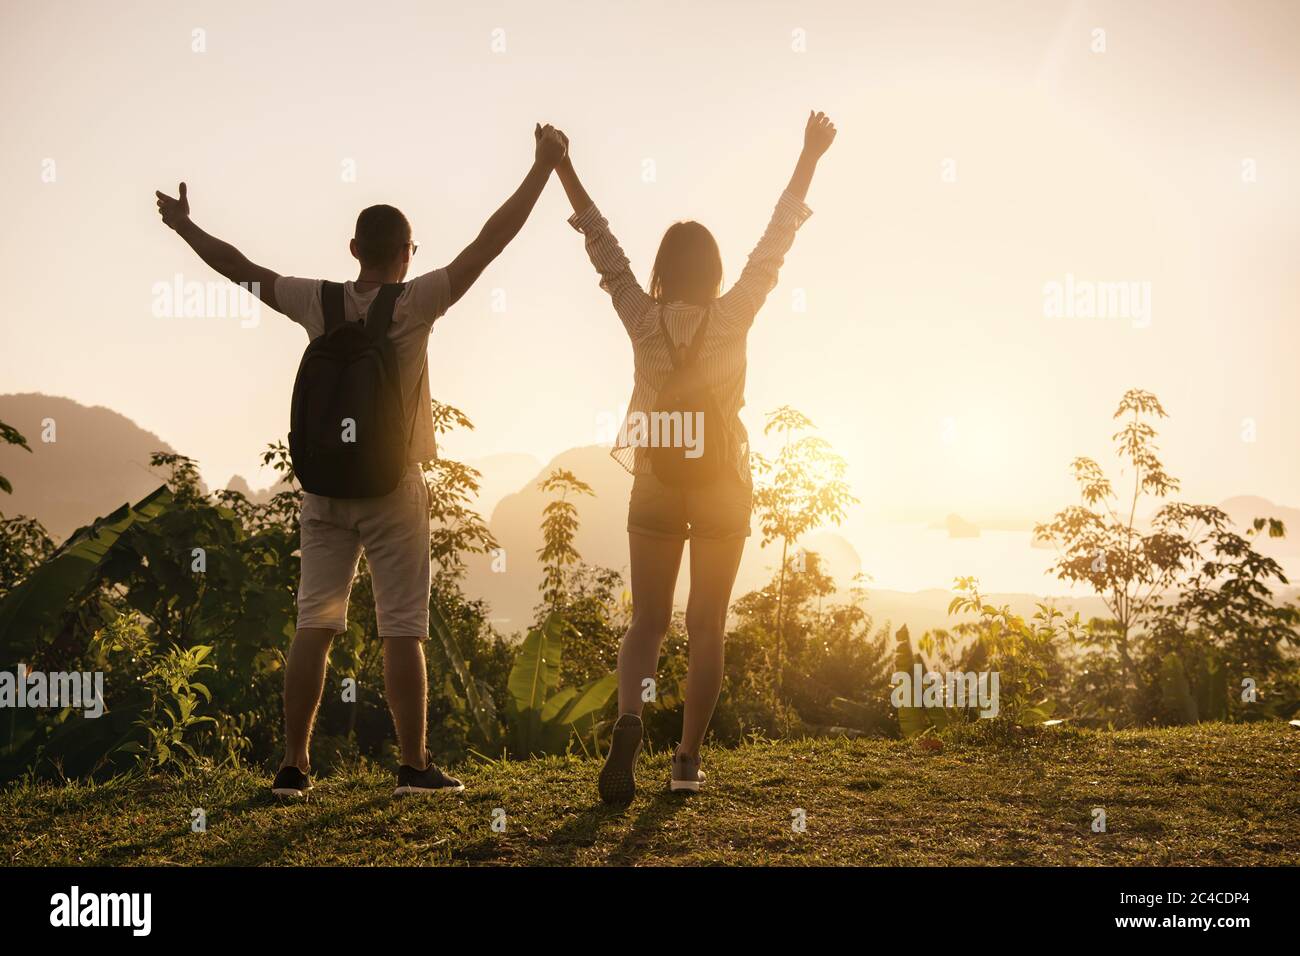 Zwei glückliche Touristen stehen mit erhobenem Arm am Aussichtspunkt und genießen den Sonnenaufgang Stockfoto